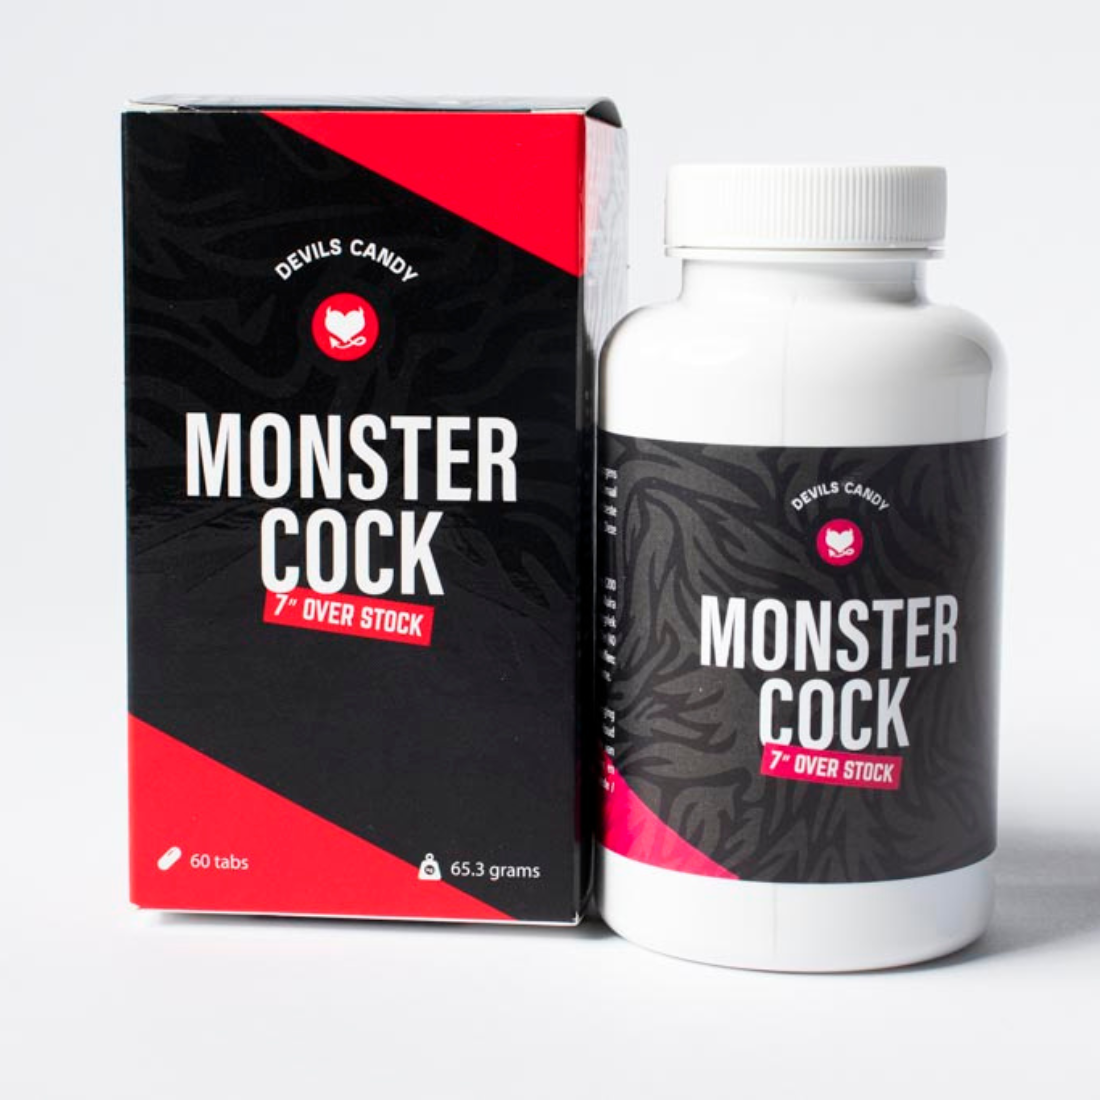 Natuurlijke erectiepillen van Devils Candy Monster Cock, te koop bij Flavourez